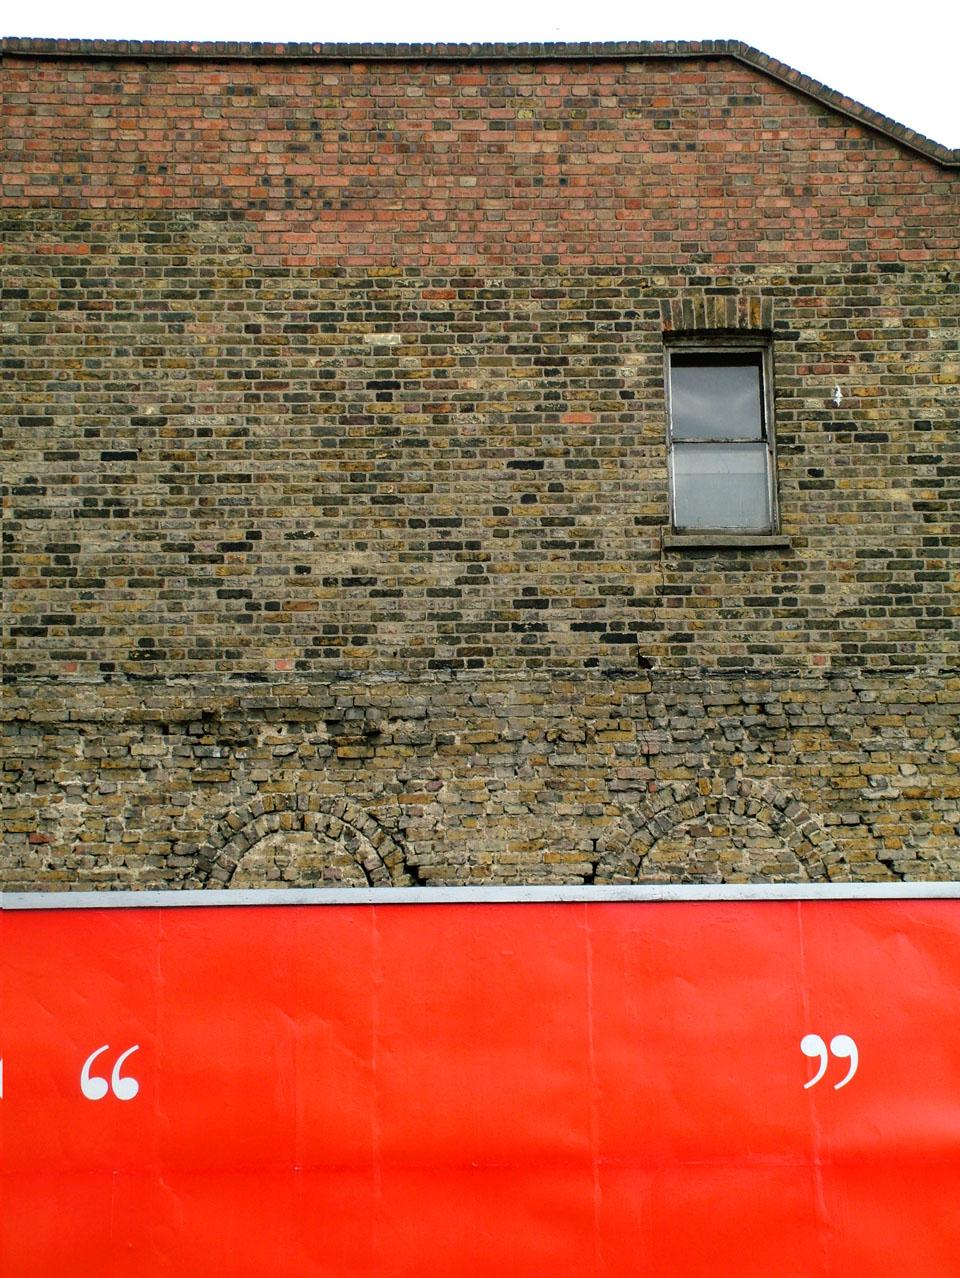 Charlie Koolhaas, True Cities: London